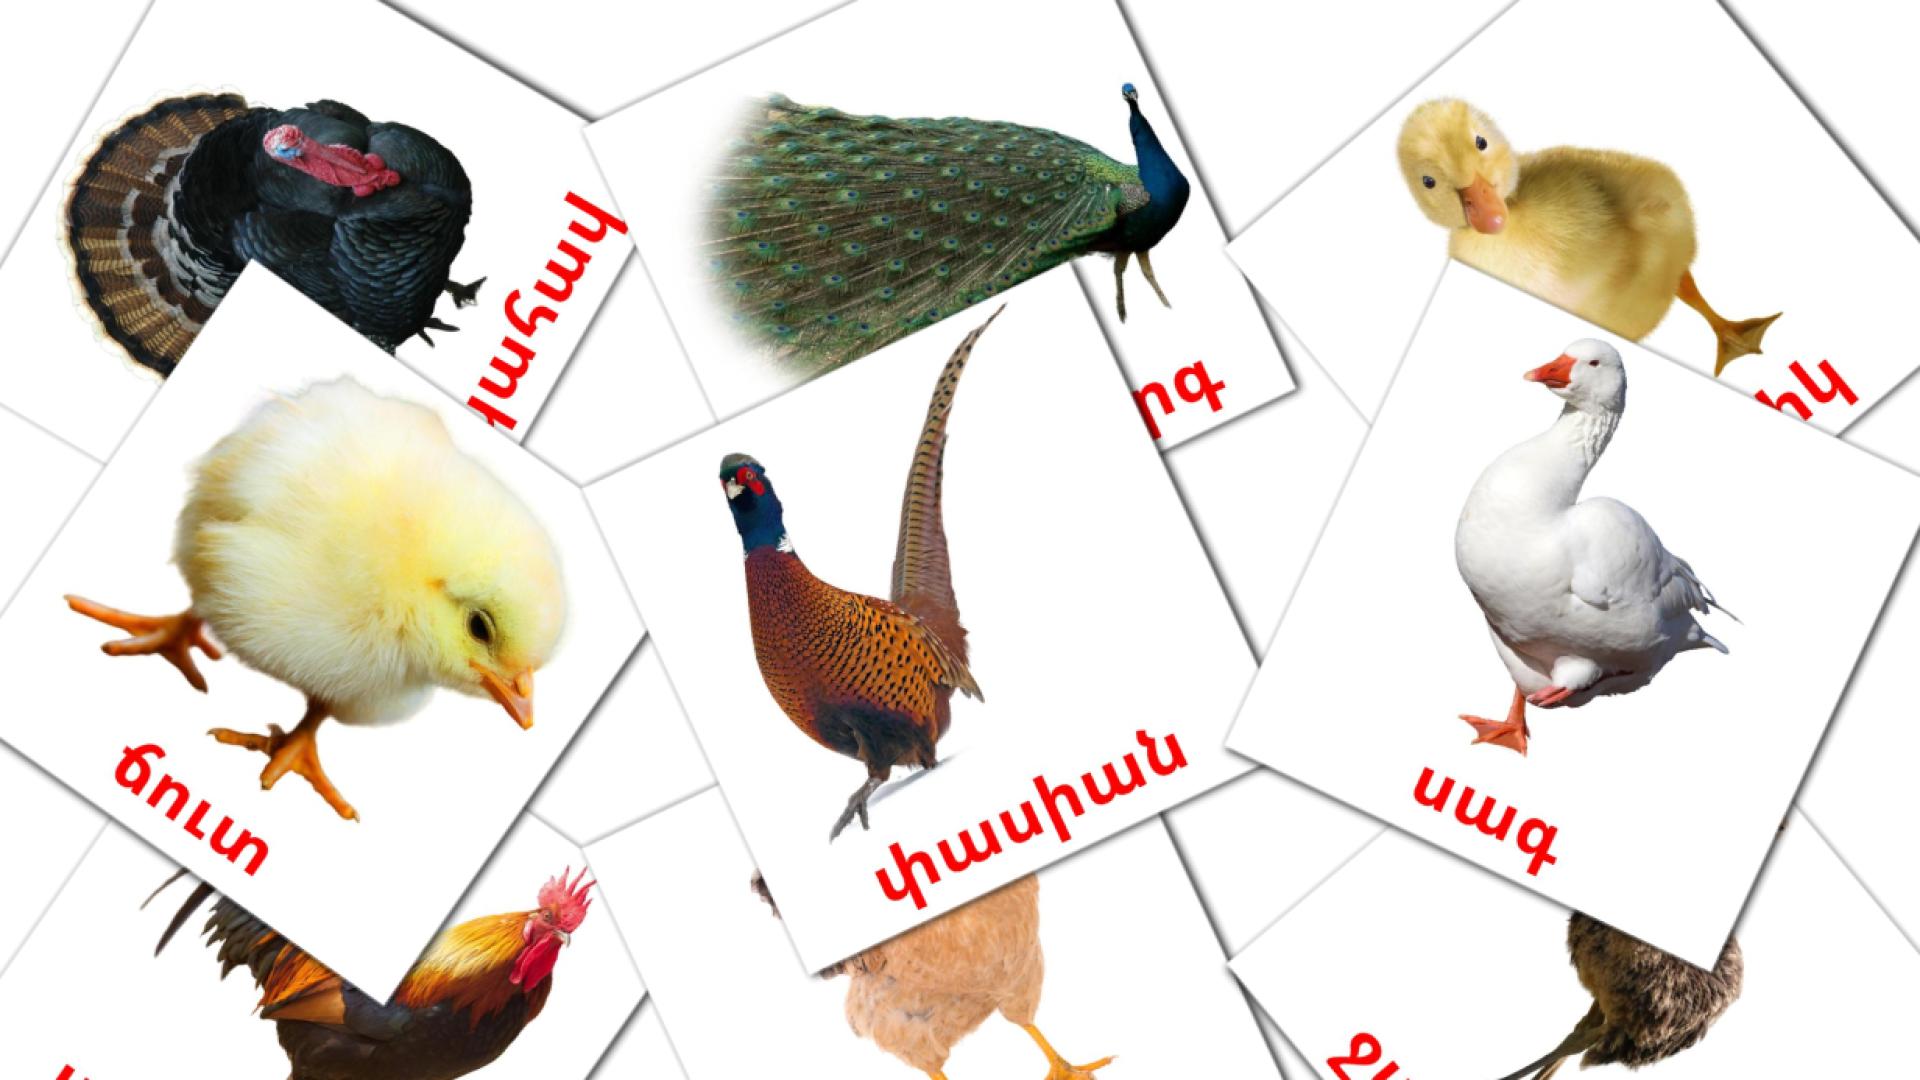 Farm birds - armenian vocabulary cards